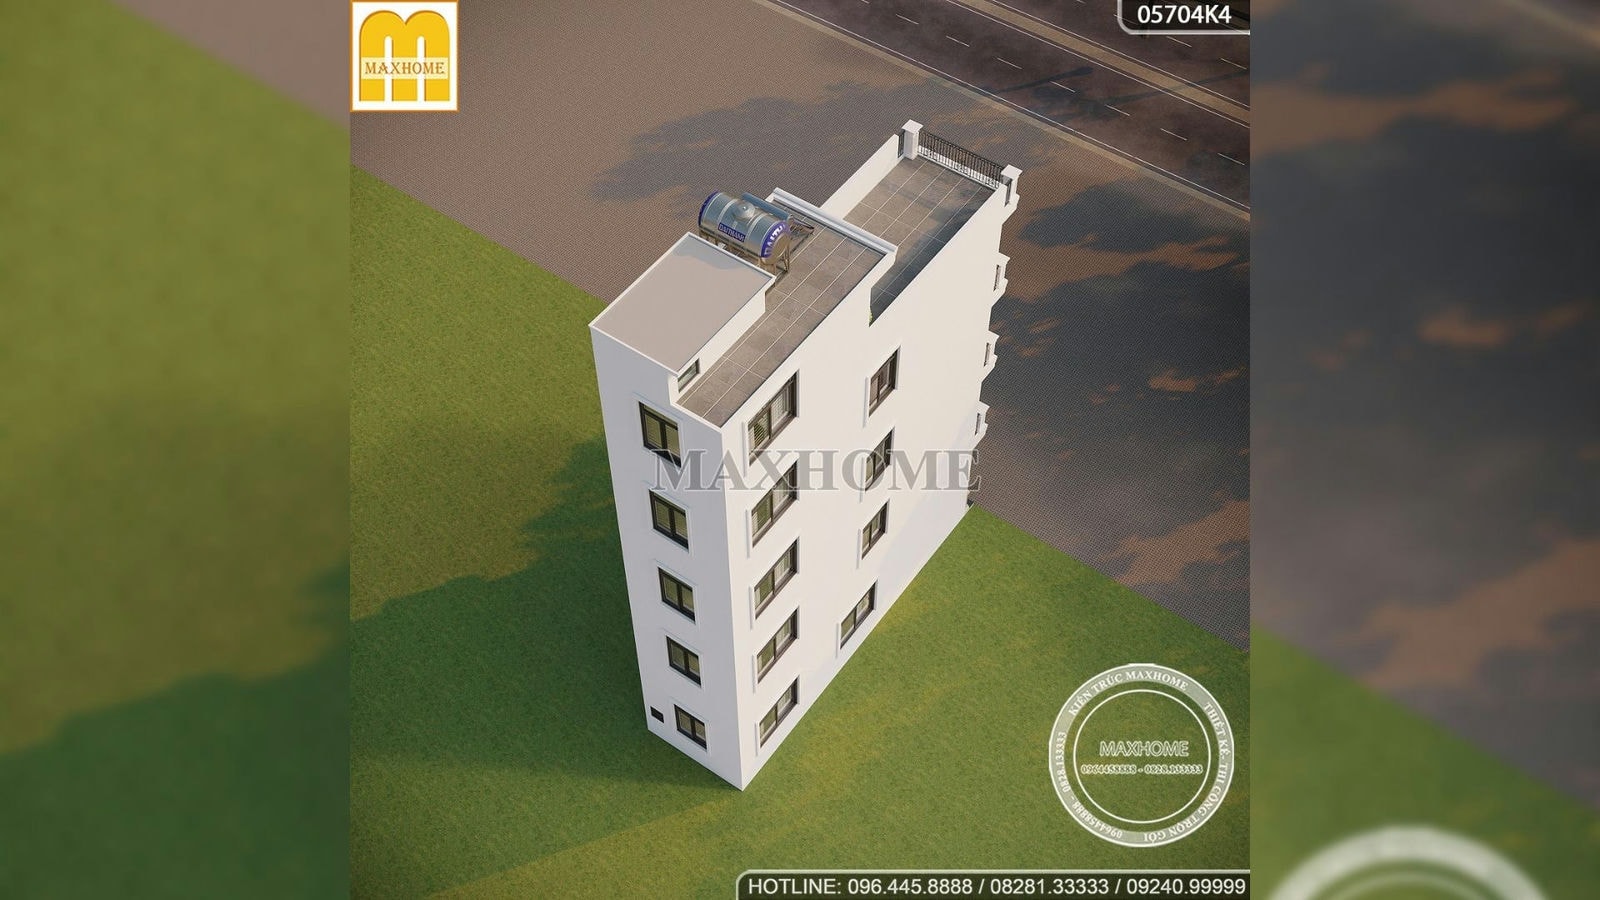 Full bản thiết kế nhà lô phố 4 tầng 1 tum 3 phòng ngủ siêu đẹp | MH00768